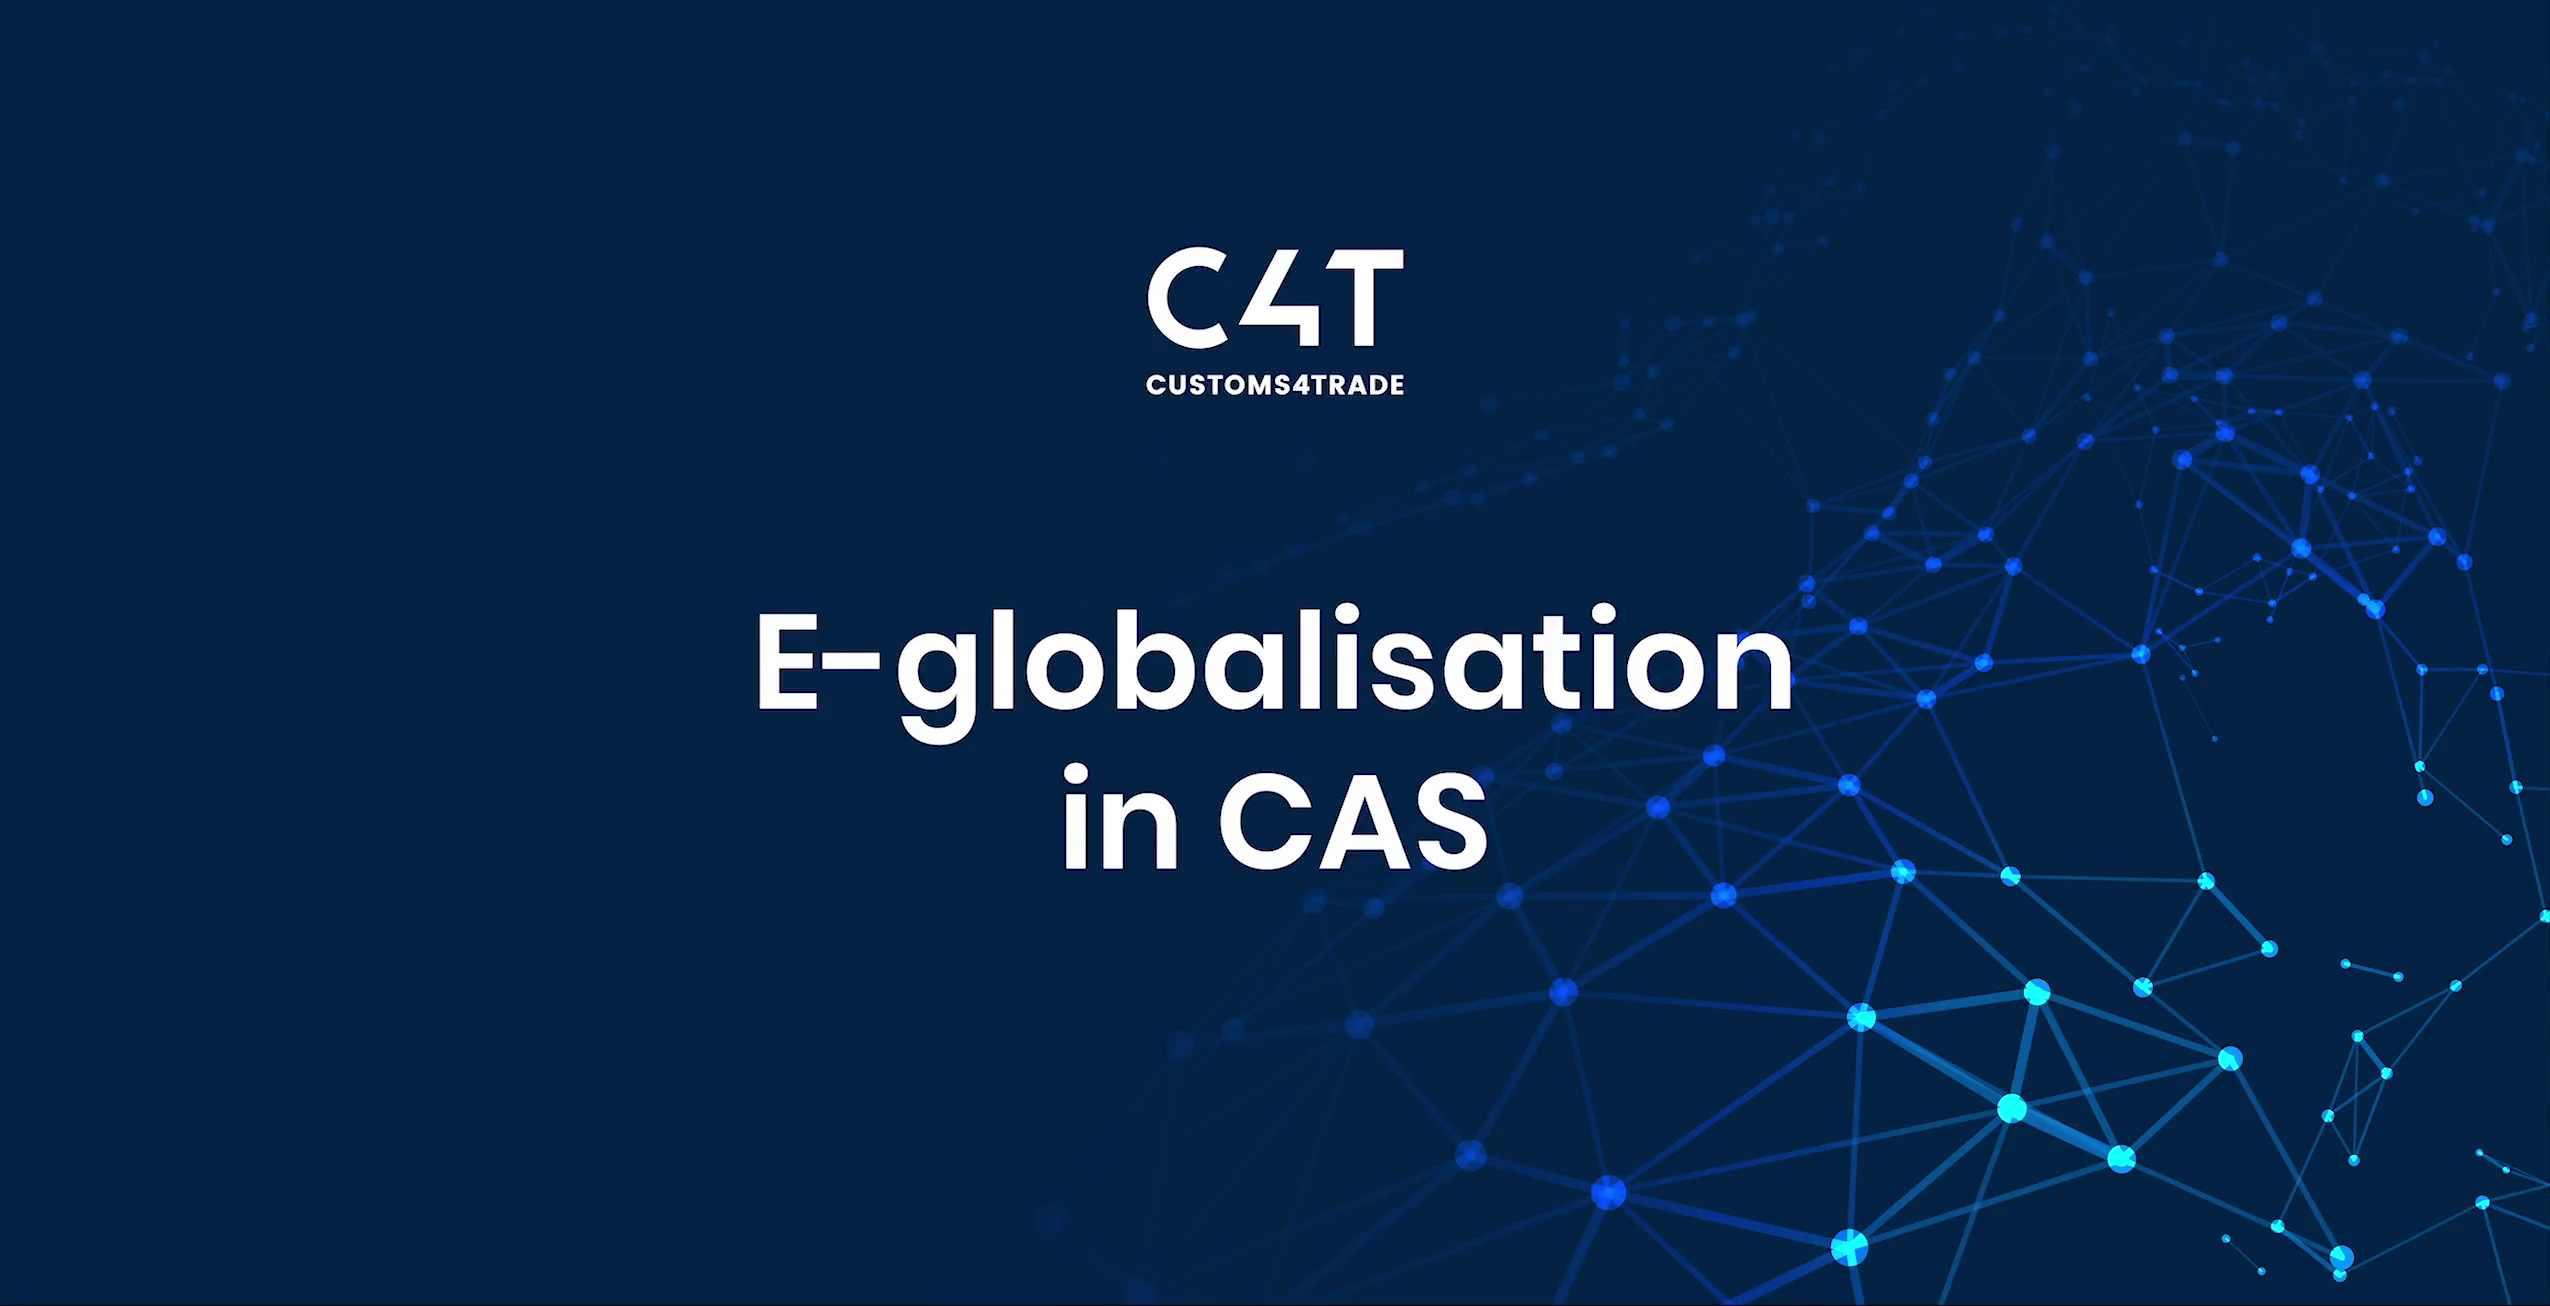 E-globalisation-CAS-EN-thumb